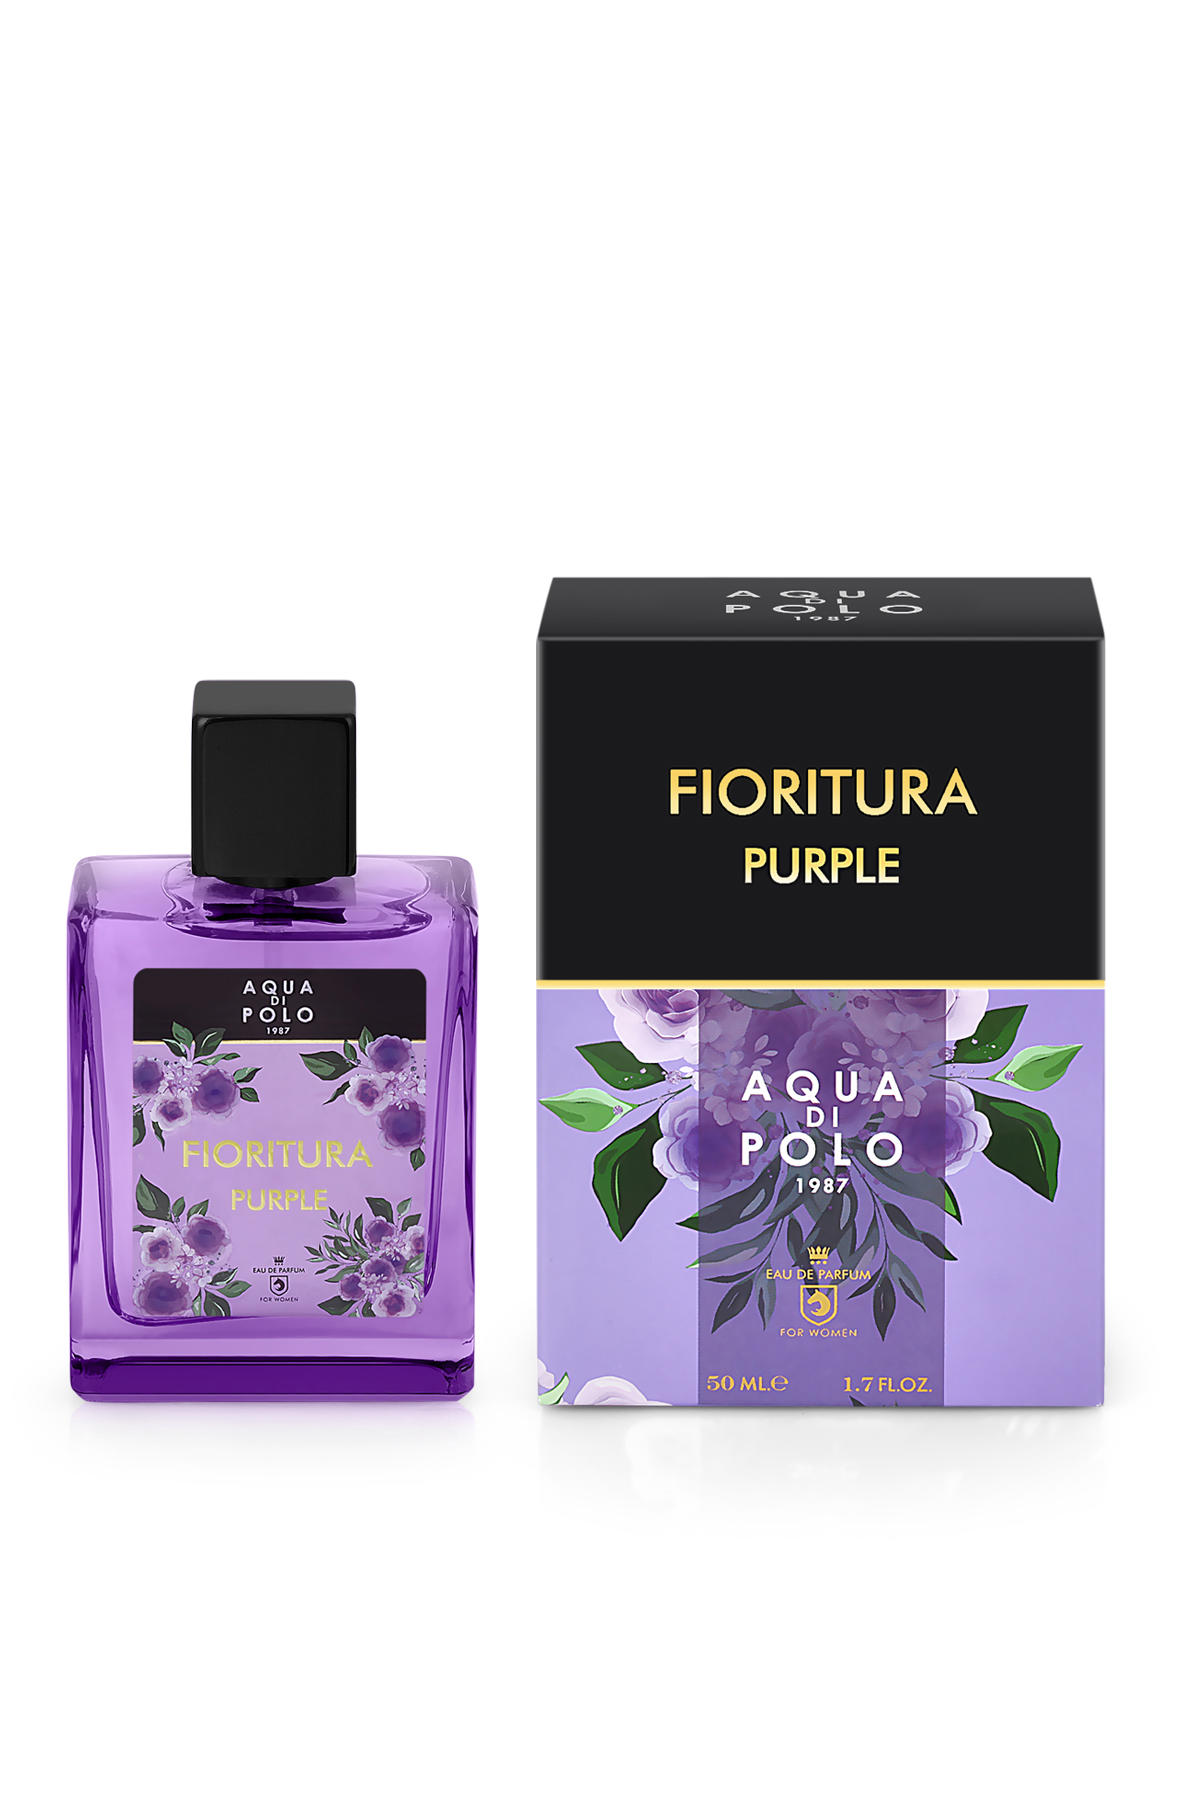 Aqua Di Polo 1987 Fioritura EDP Çiçeksi-Meyvemsi Kadın Parfüm 50 ml